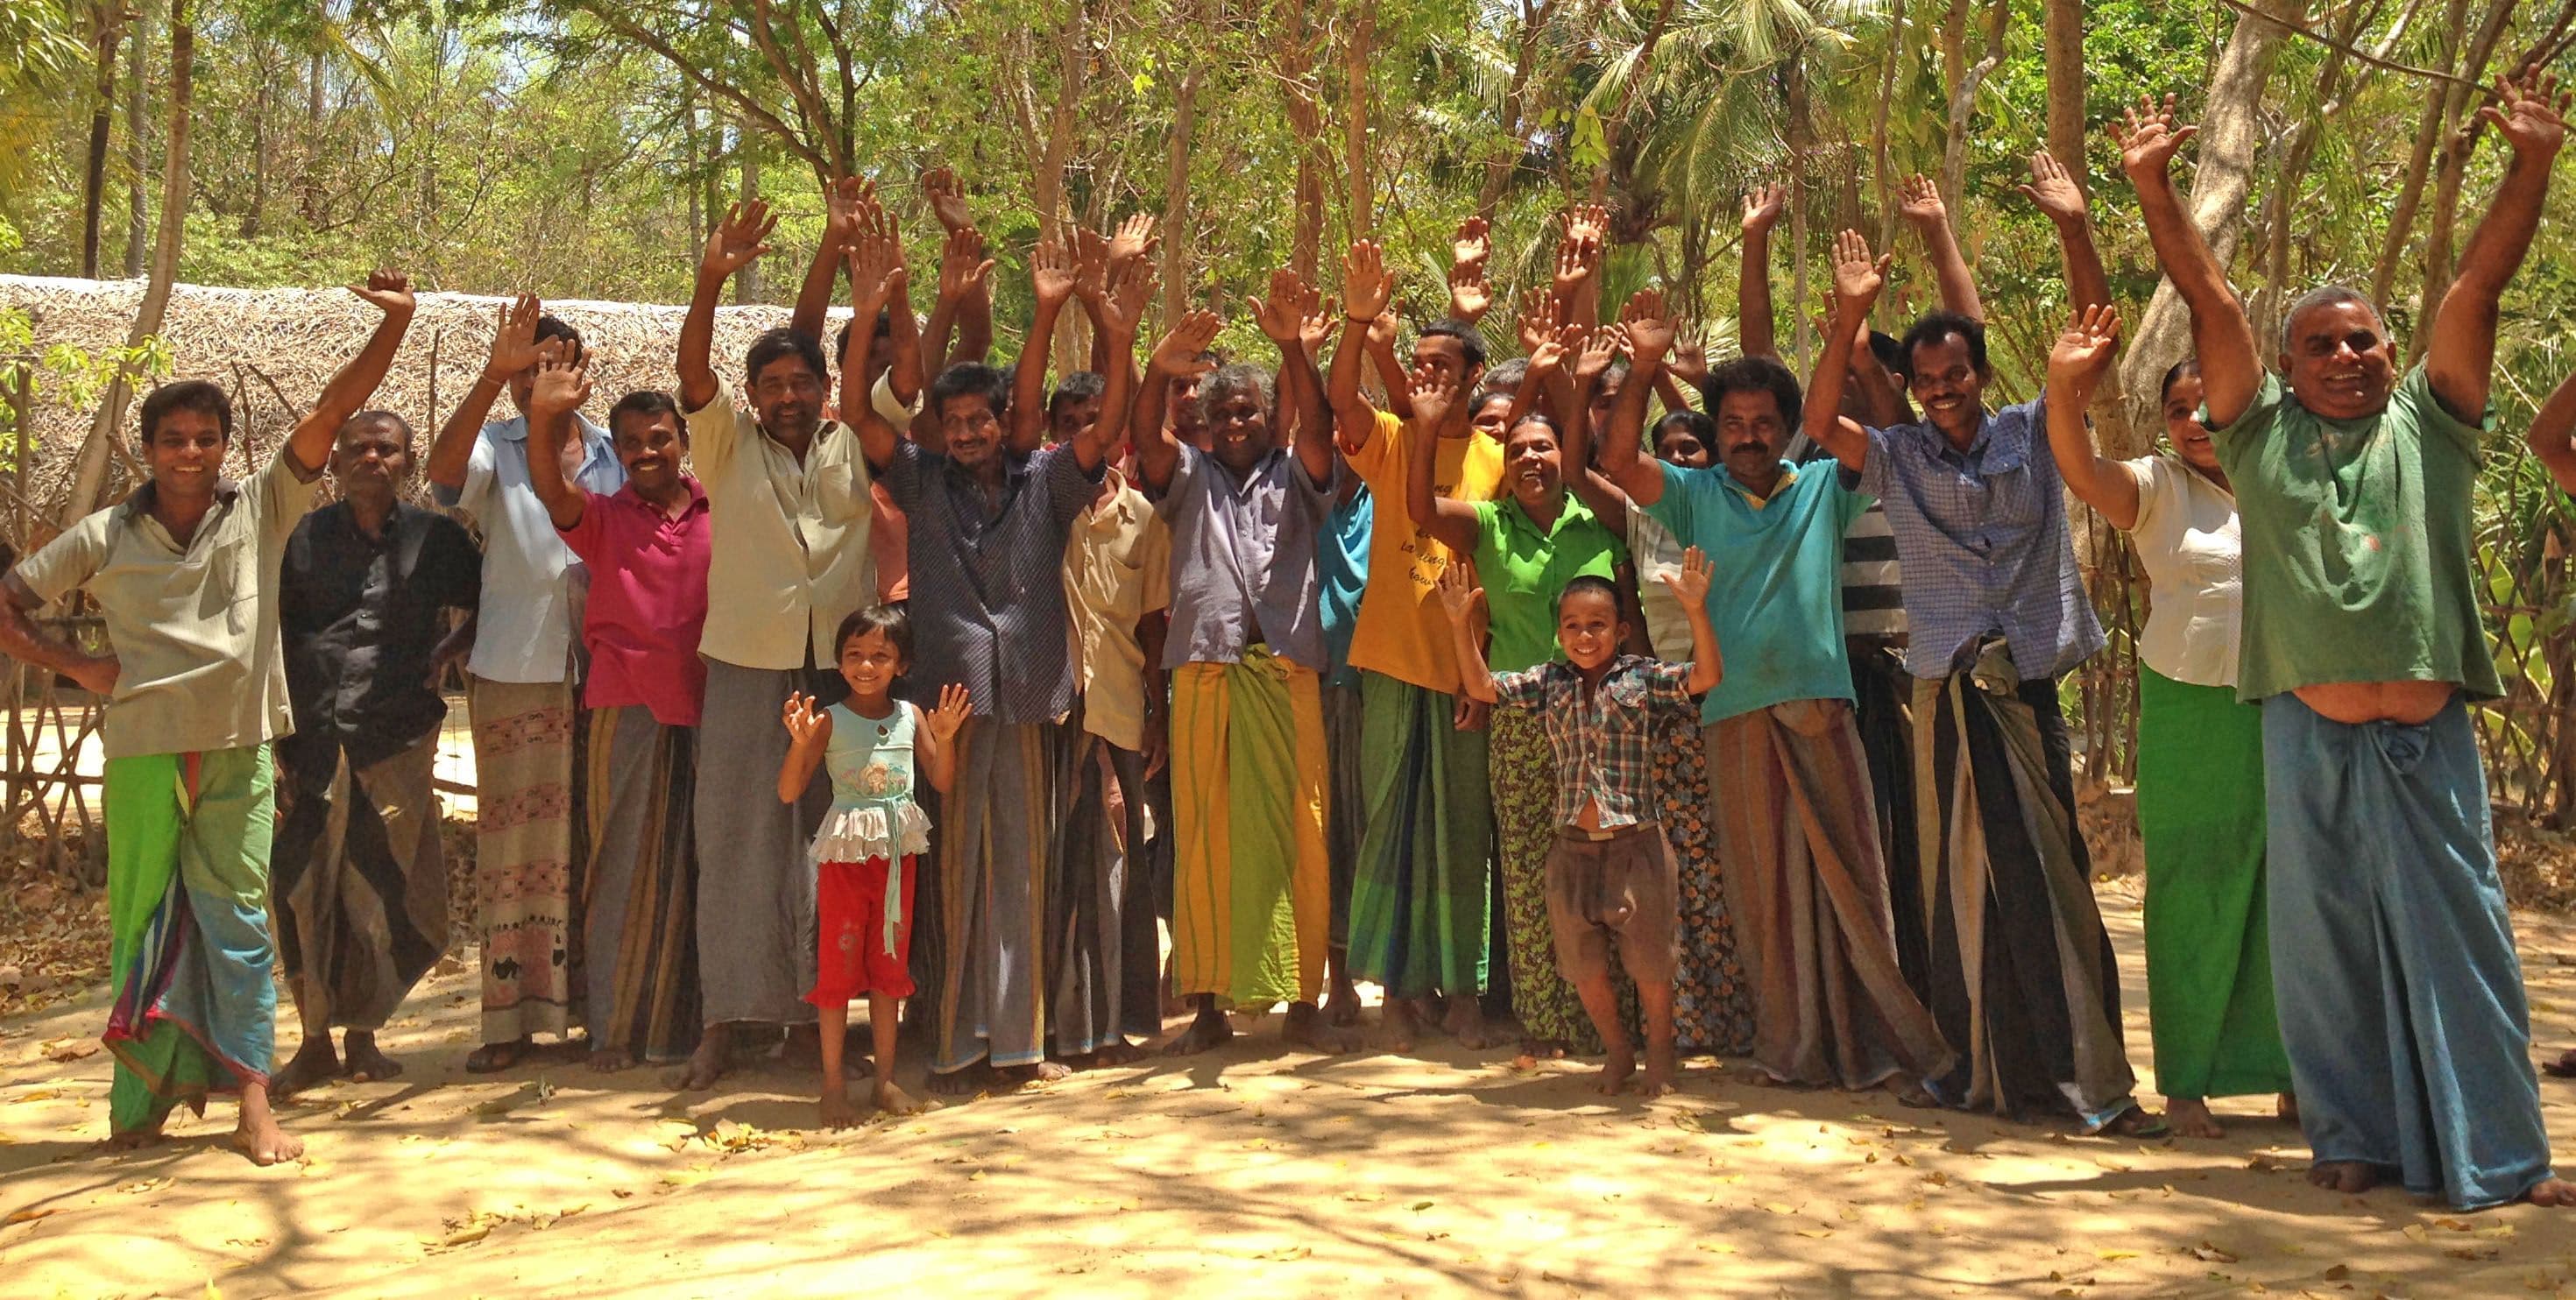 Познакомьтесь с людьми в деревне Анурадхапура - Шри-Ланка